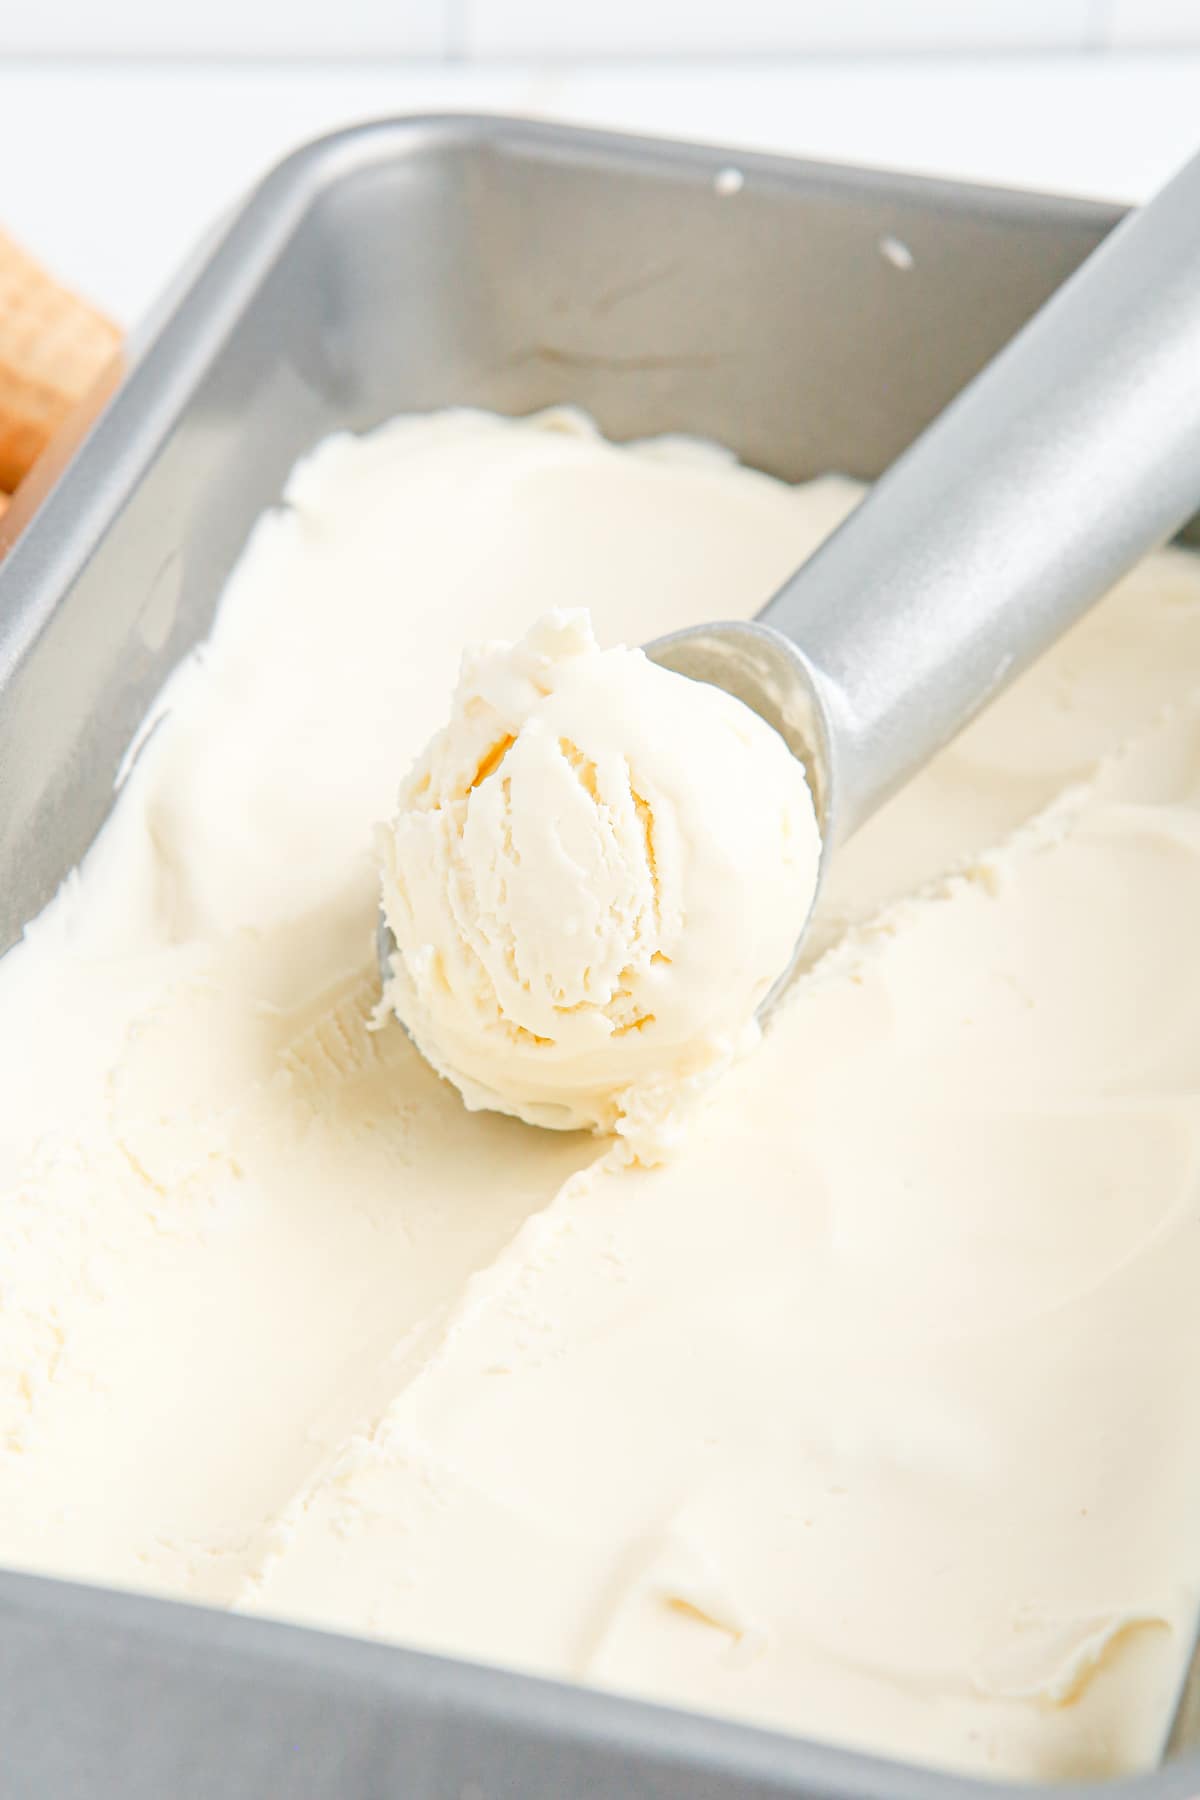 冰淇淋sc勺从面包盘中铲香草冰淇淋GydF4y2Ba